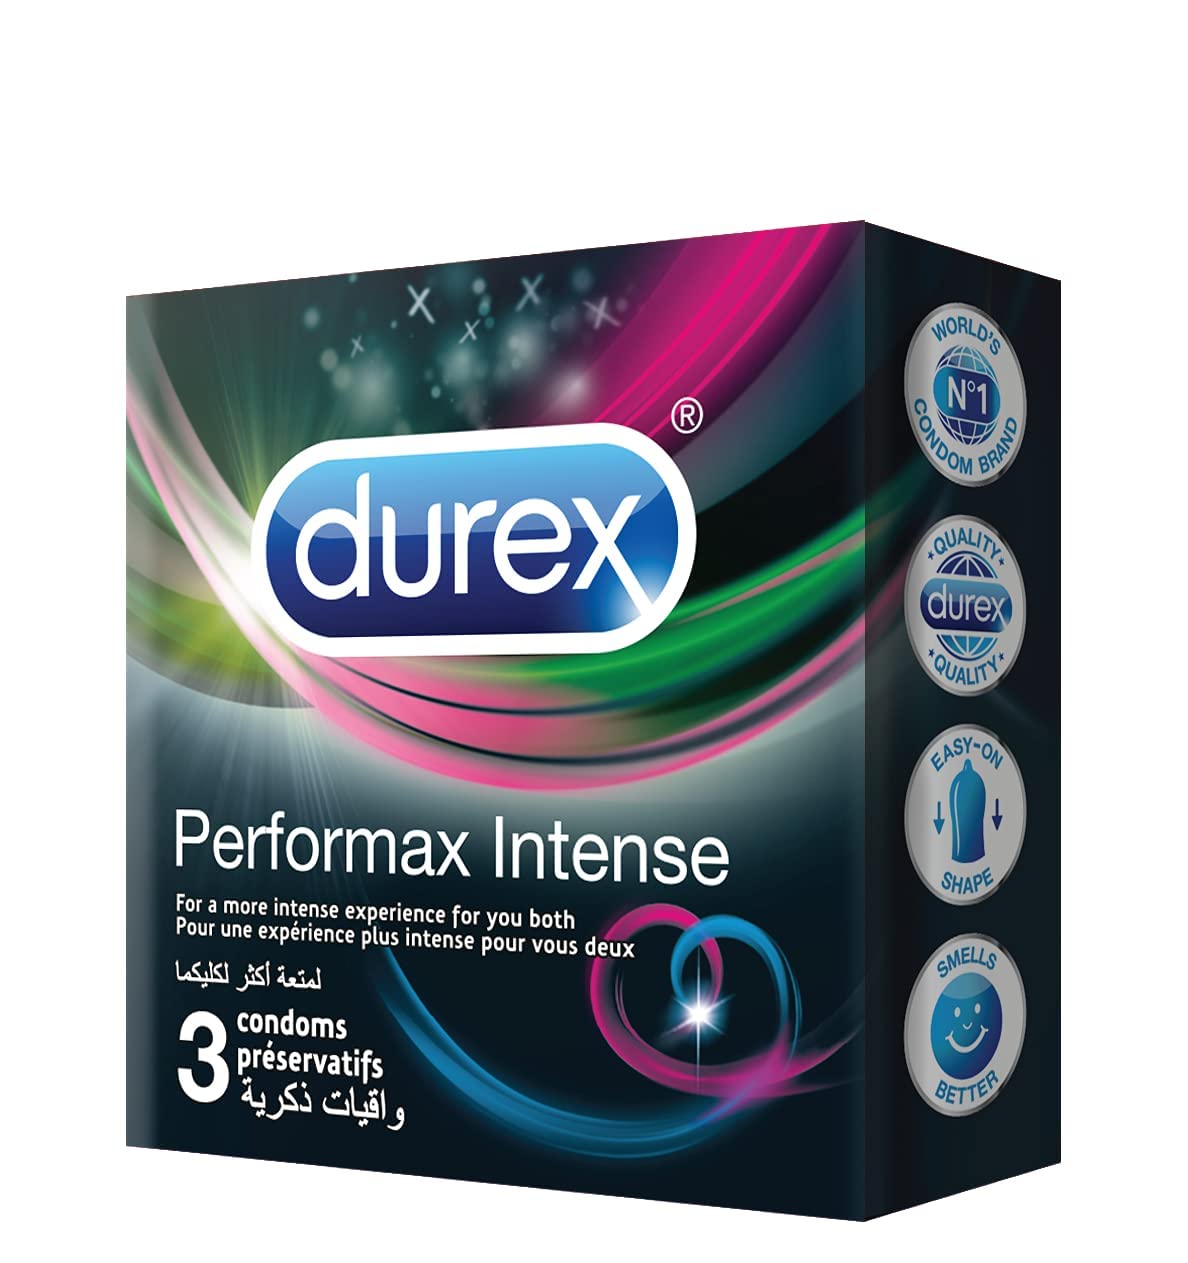 Phụ nữ thích loại bao cao su nào nhất? Hãy thử bao cao su tăng cảm giác cho nữ Durex Performax Intense Condoms 